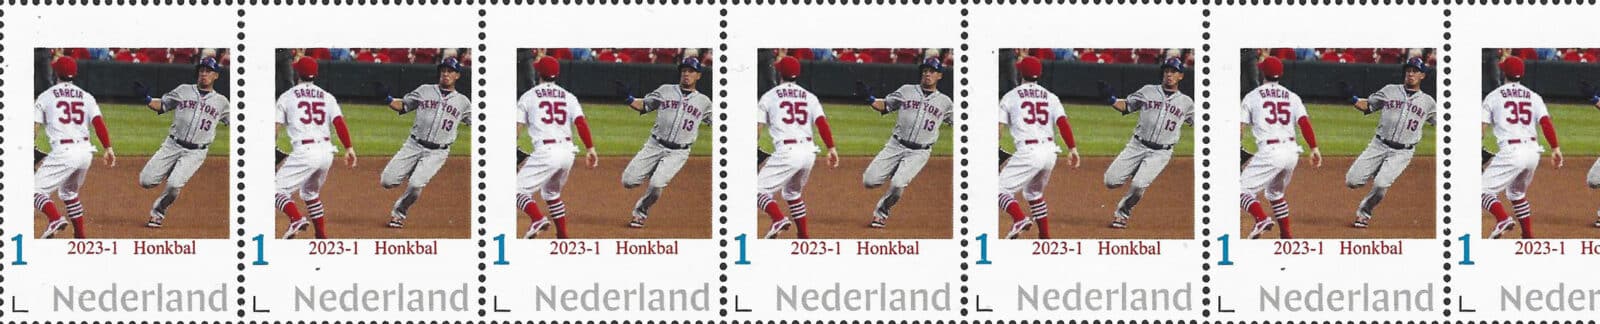 2023 Baseball Postage Stamps header